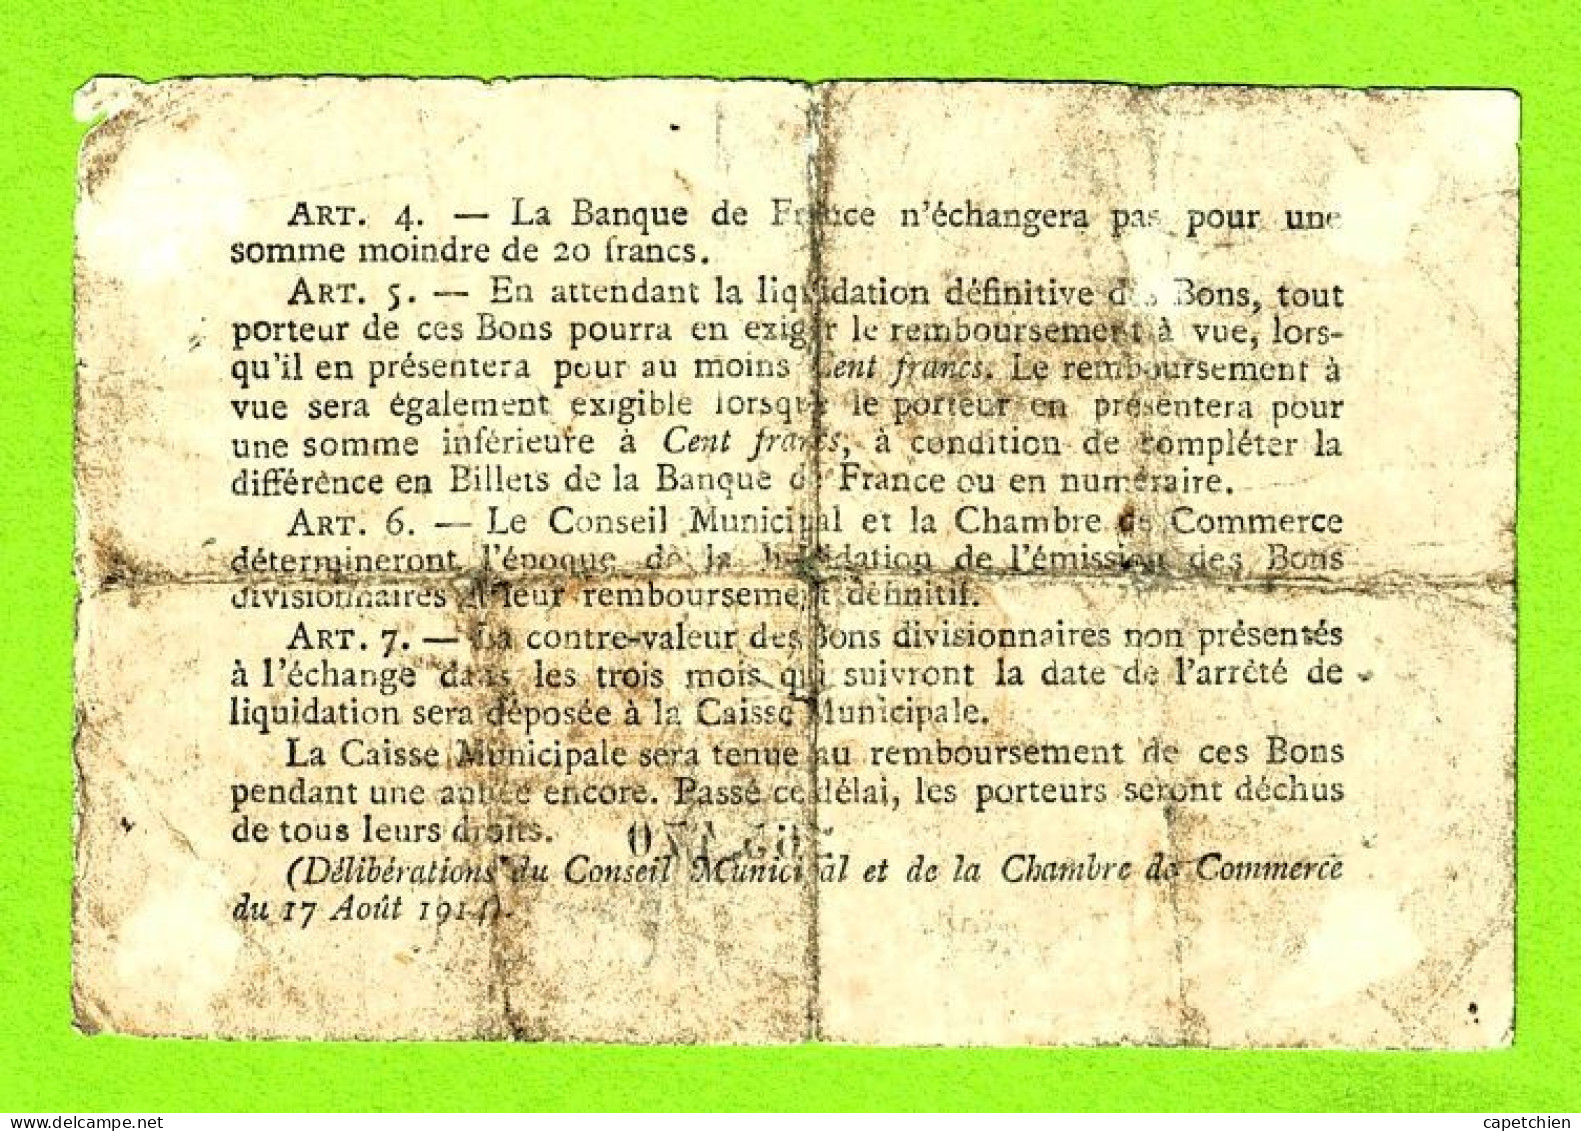 FRANCE / VILLE & CHAMBRE De COMMERCE De ROUEN / 50 CENTIMES /  1916  / N° 265470 - Cámara De Comercio